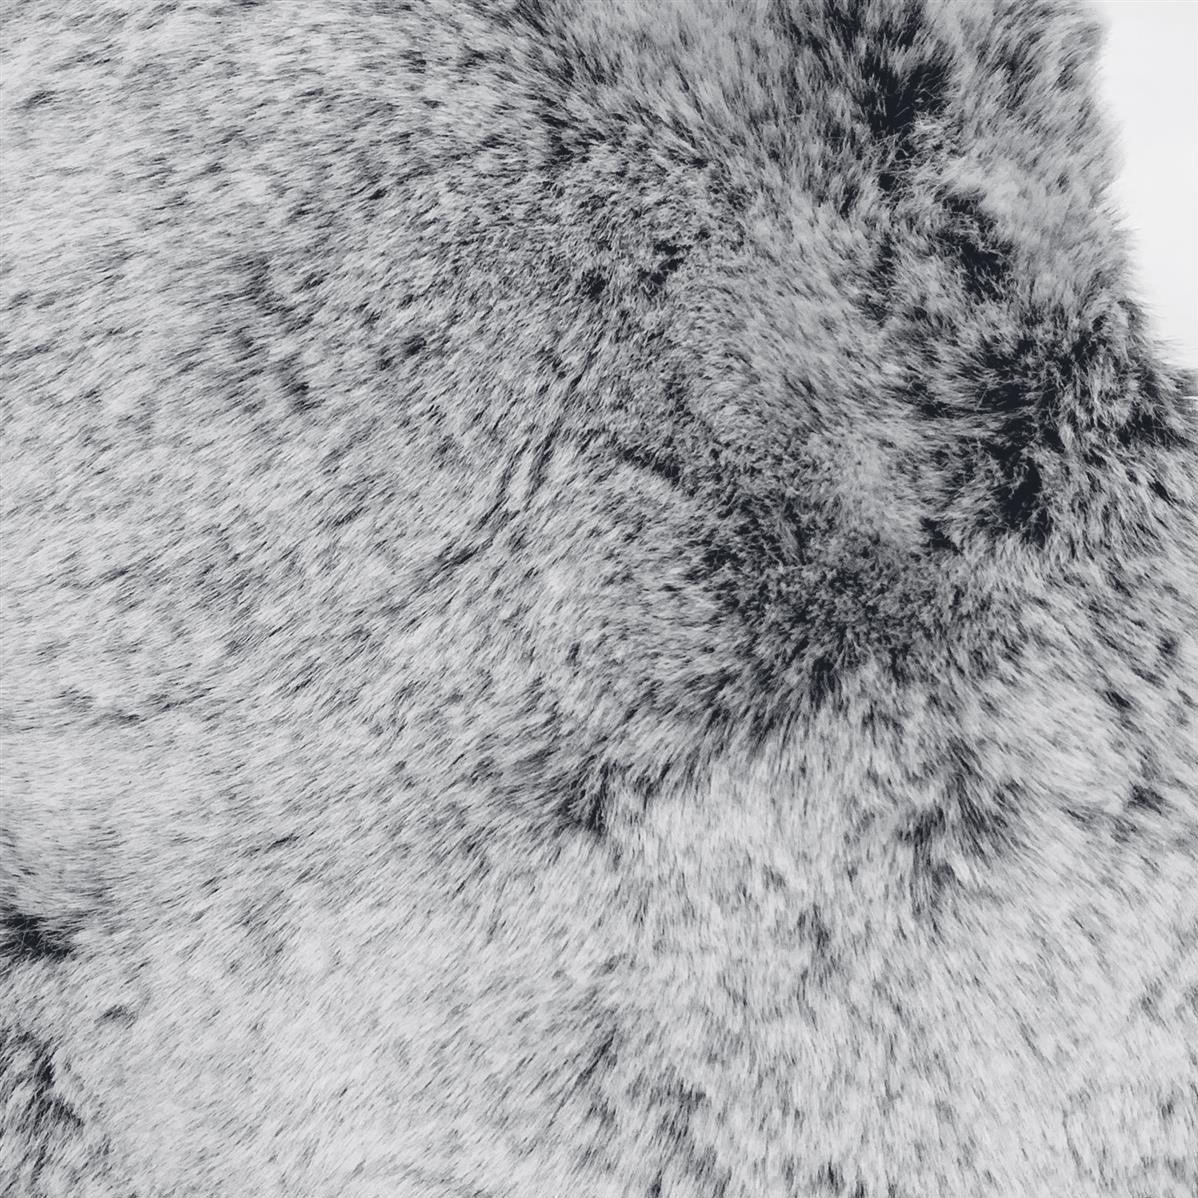 Eșarfă Răsucită din Blană Artificială, 22 cm x 40 cm, Alb-Negru - Bijuterii TV